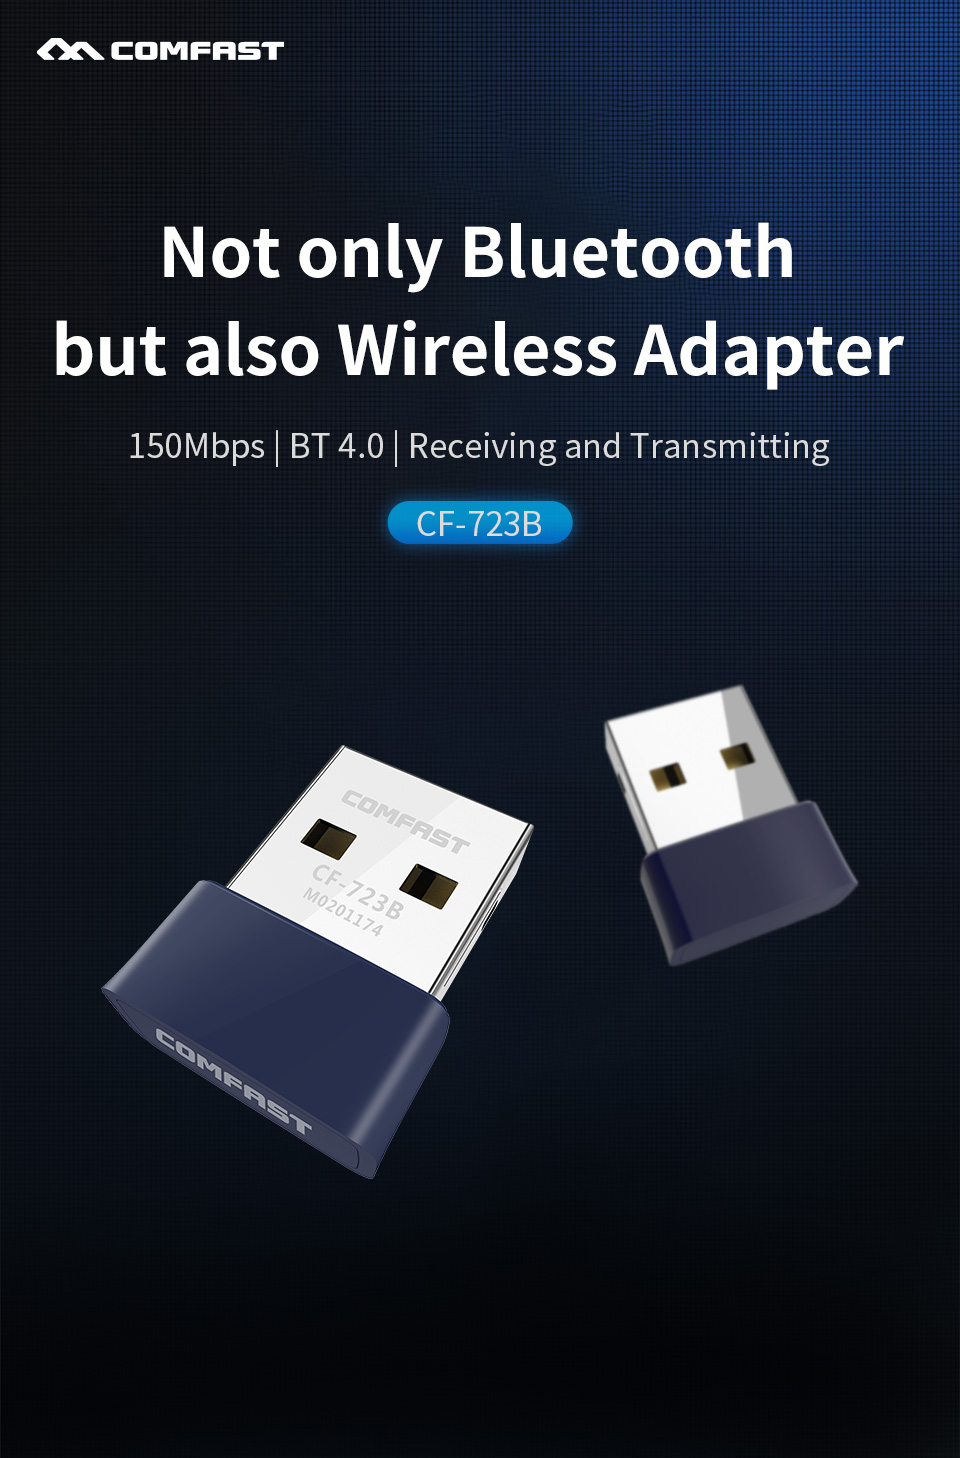 COMFAST-CF723B-bluetooth40-Wireless-Adapter-Receiving-Transmitting-2-in-1-USB40-USB-Adapter-bluetoot-1558407-1